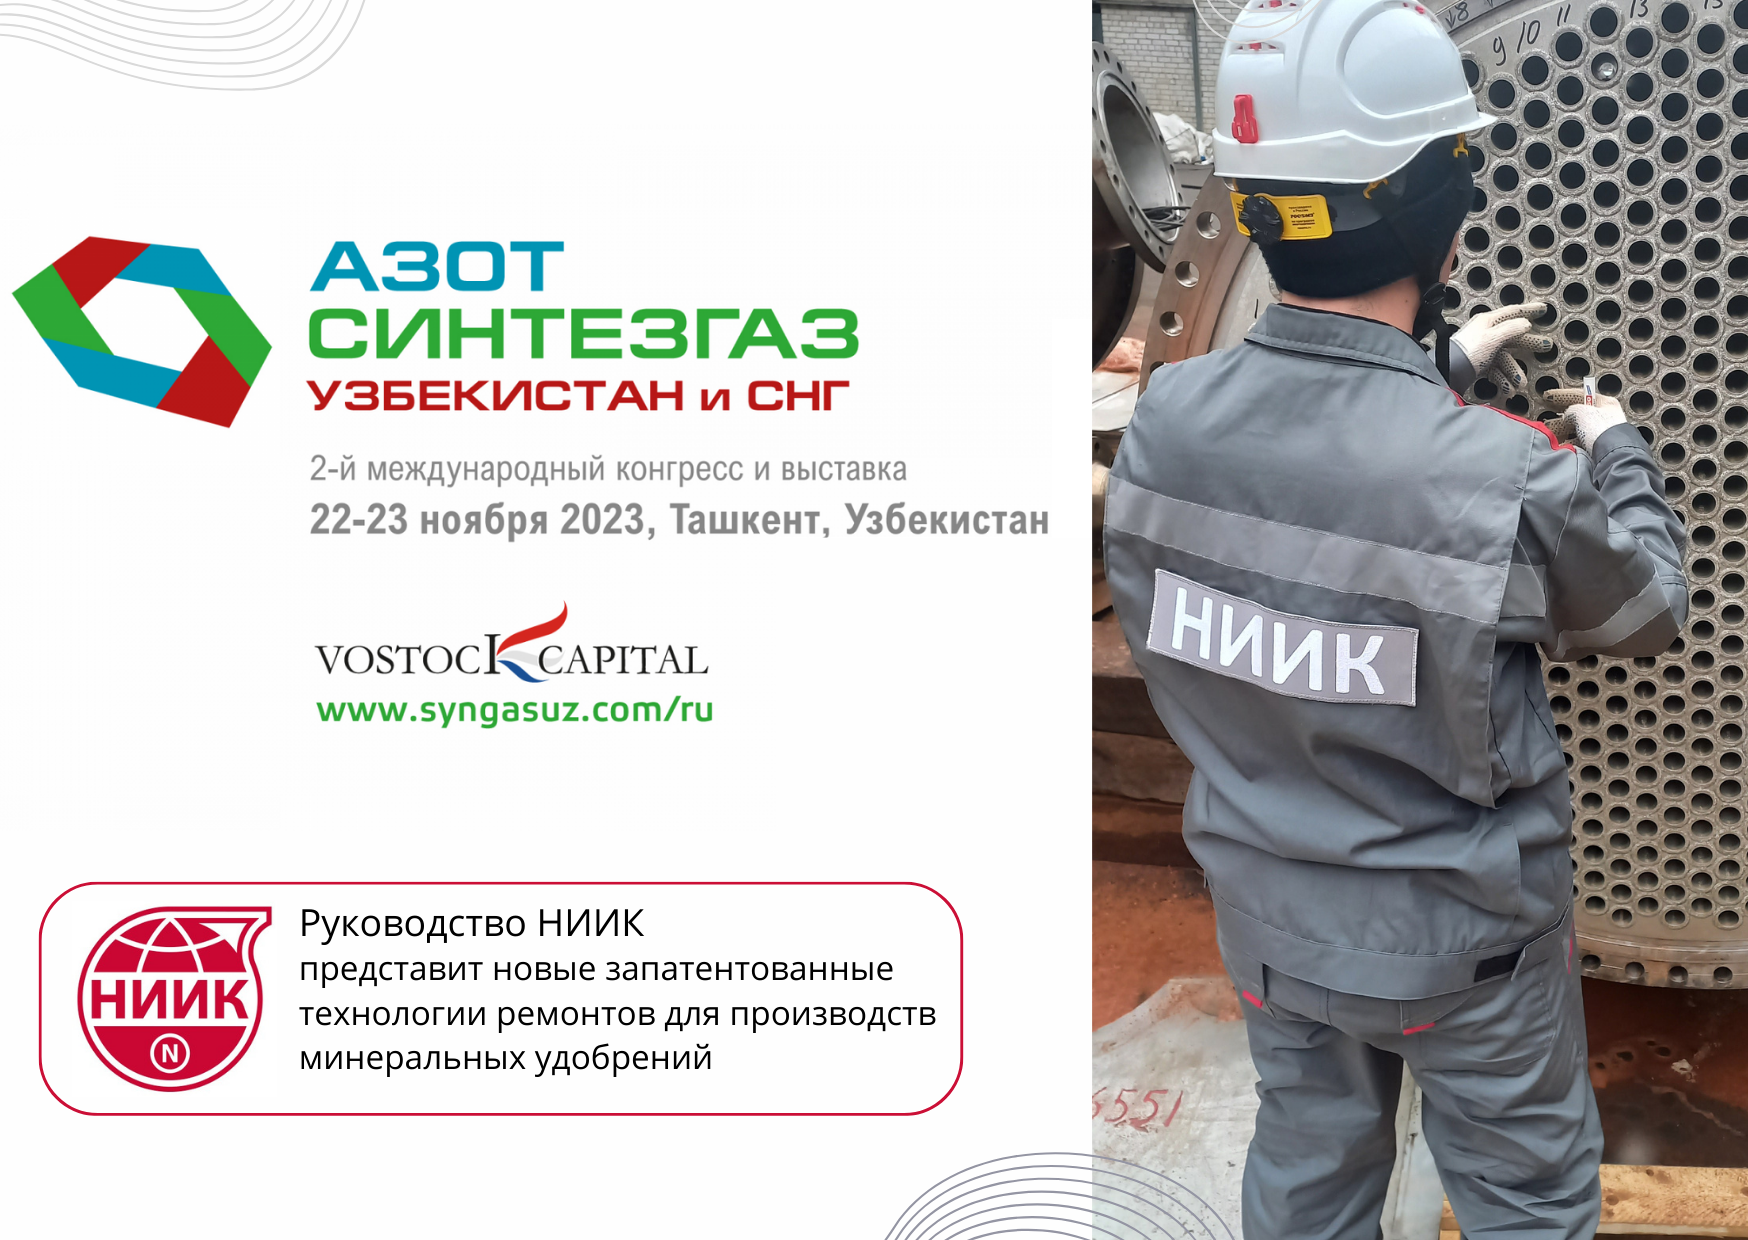 Руководство НИИК представит новые запатентованные технологии ремонтов для производств минеральных удобрений на II международном конгрессе и выставке «Азот Синтезгаз. Узбекистан и СНГ»